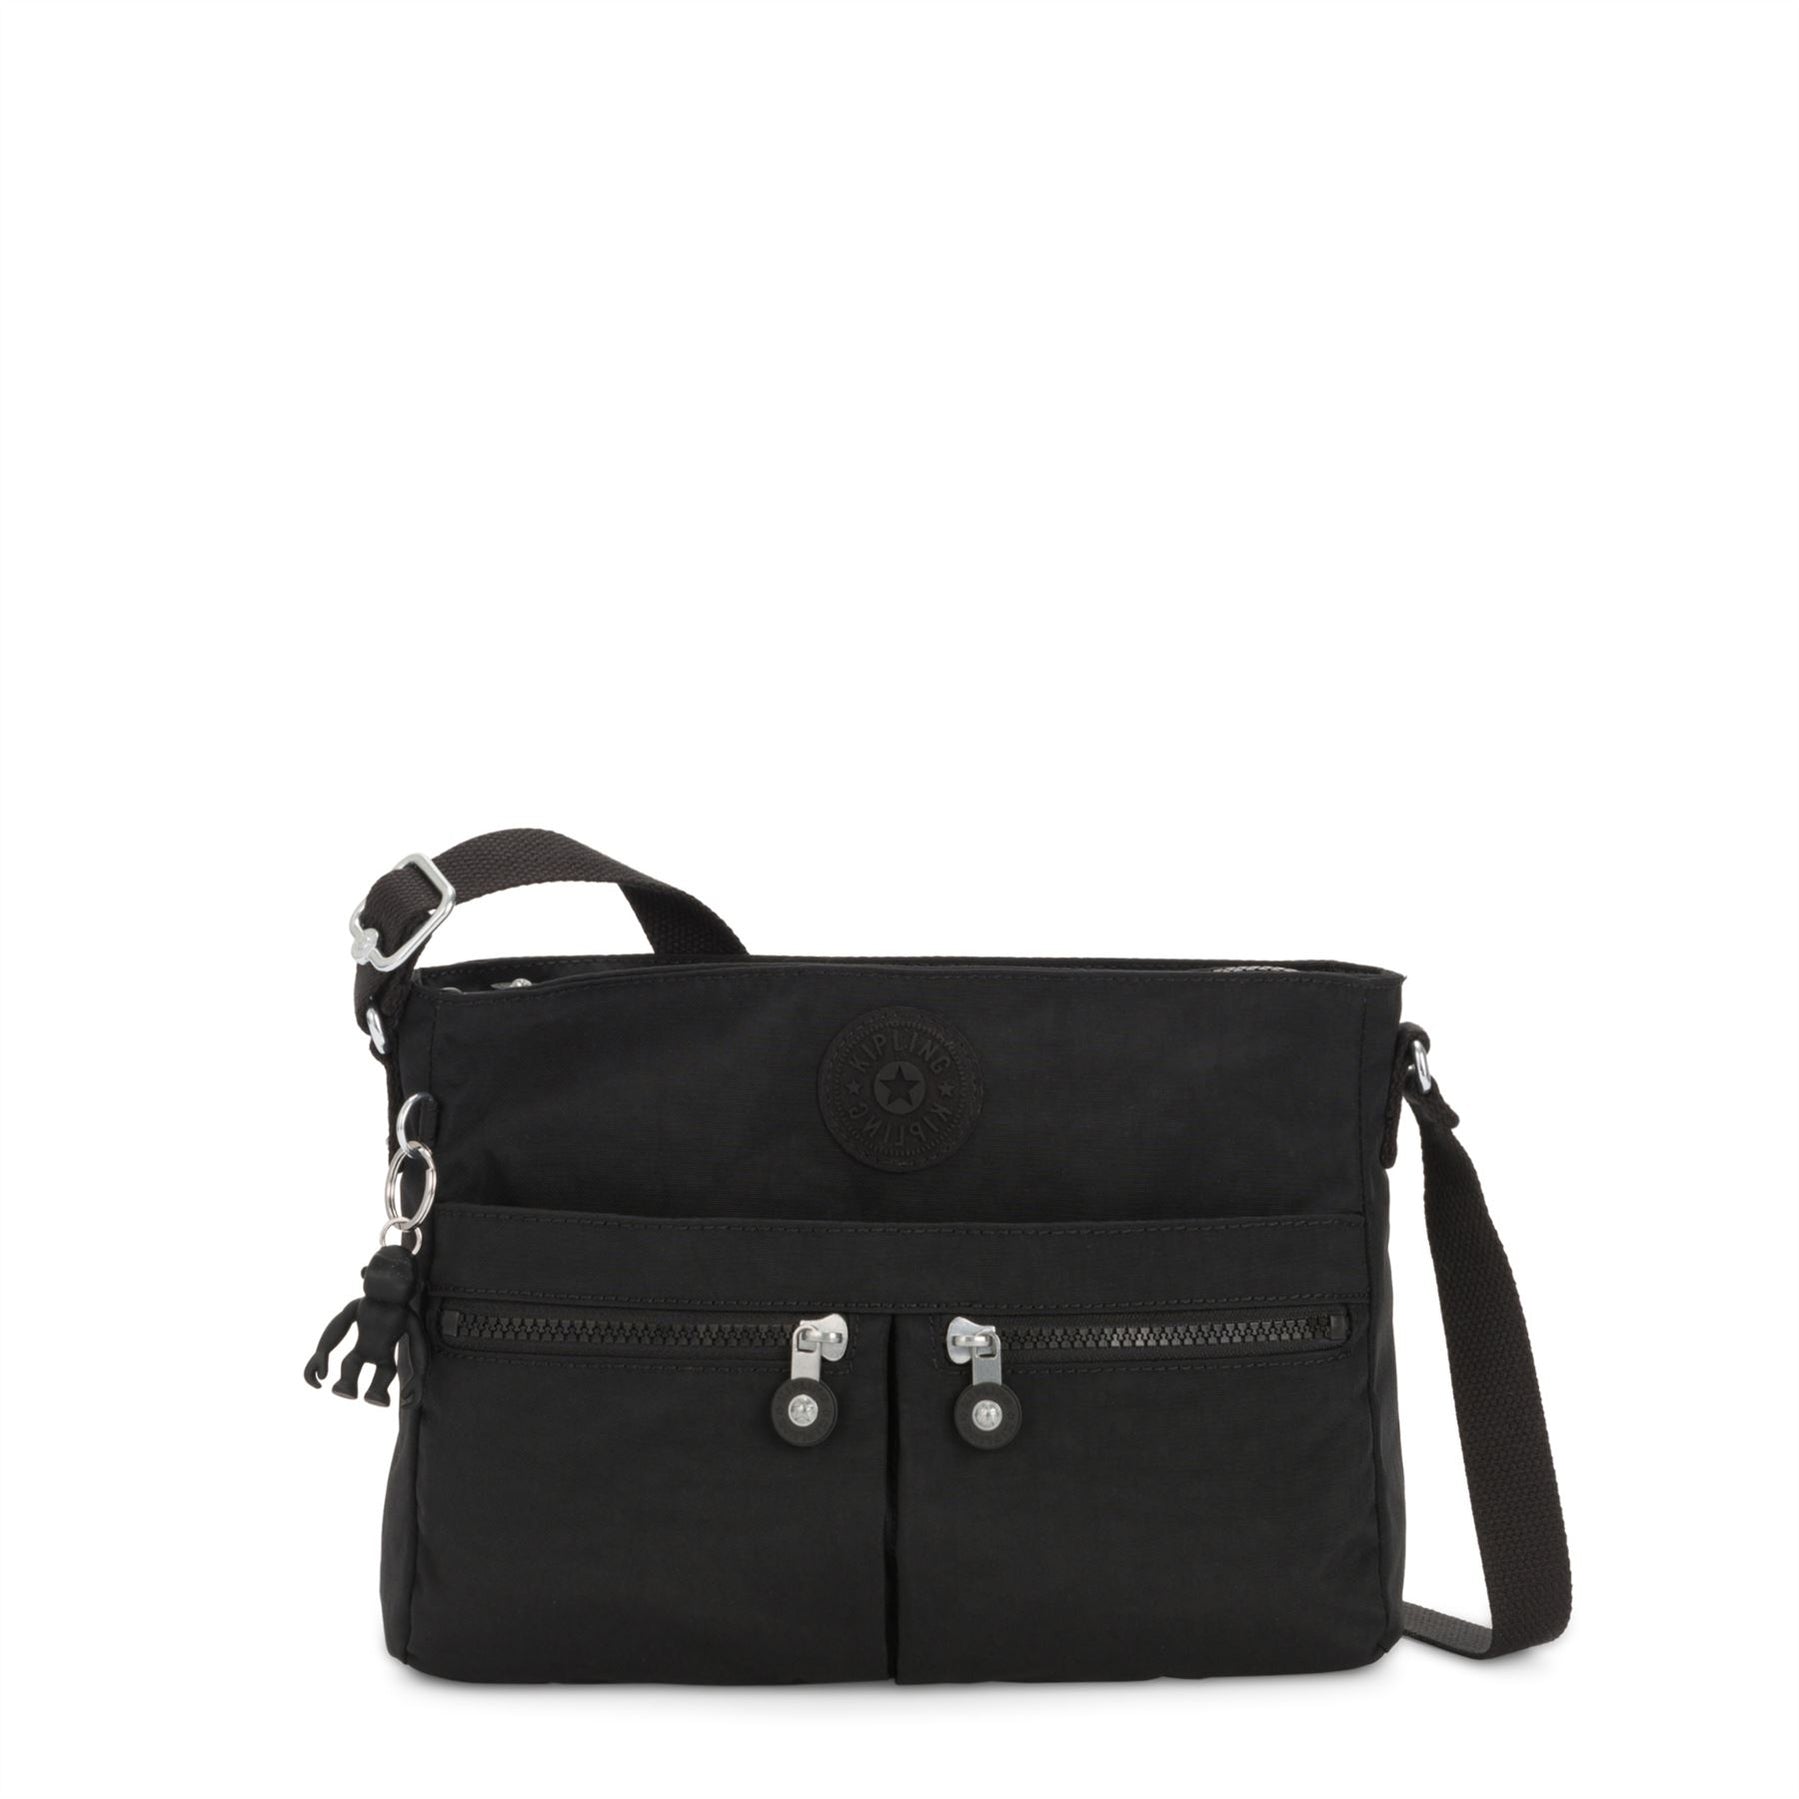 Kipling New Angie Handbag — Aspen Of Hereford Ltd